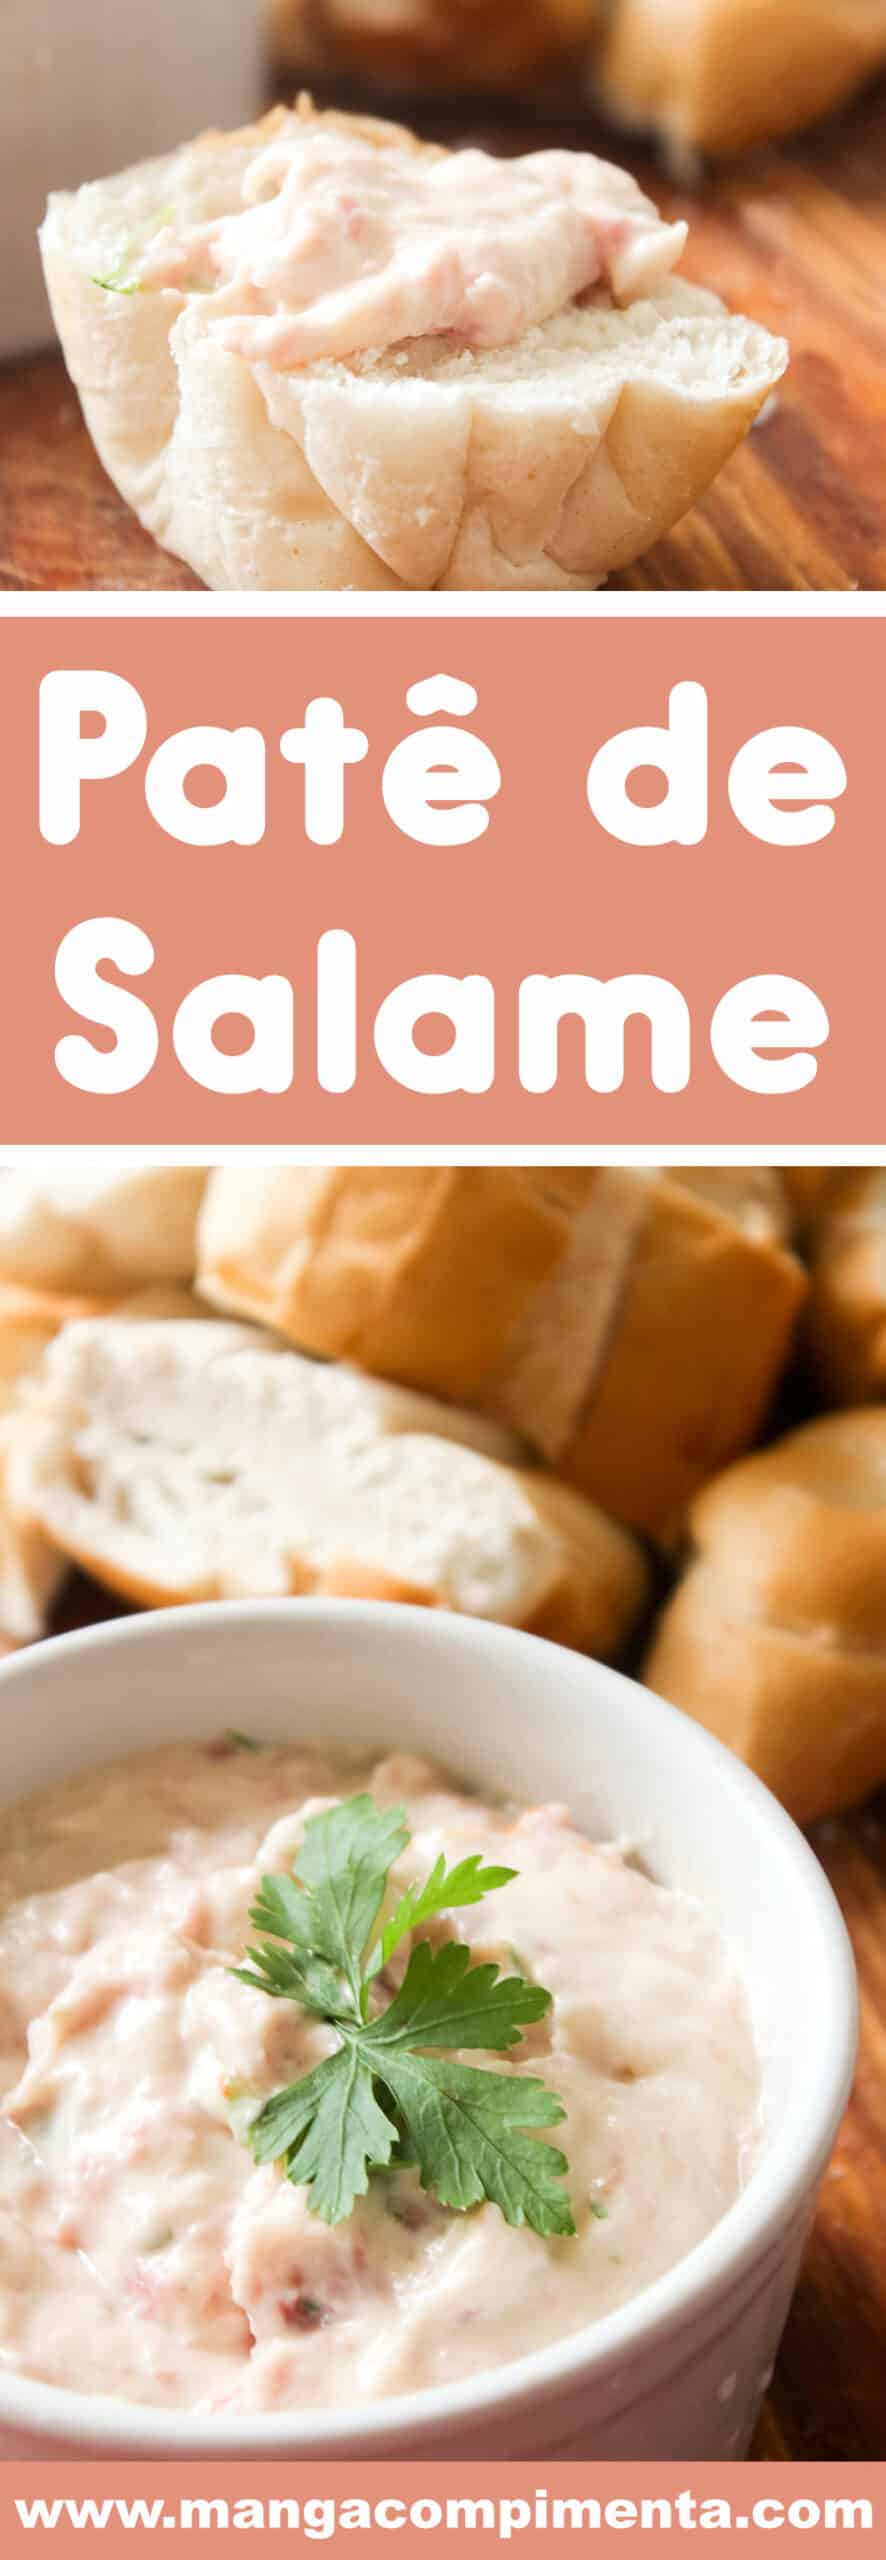 Receita de Patê de Salame - prepare para uma festa ou para o lanche a tarde da família.